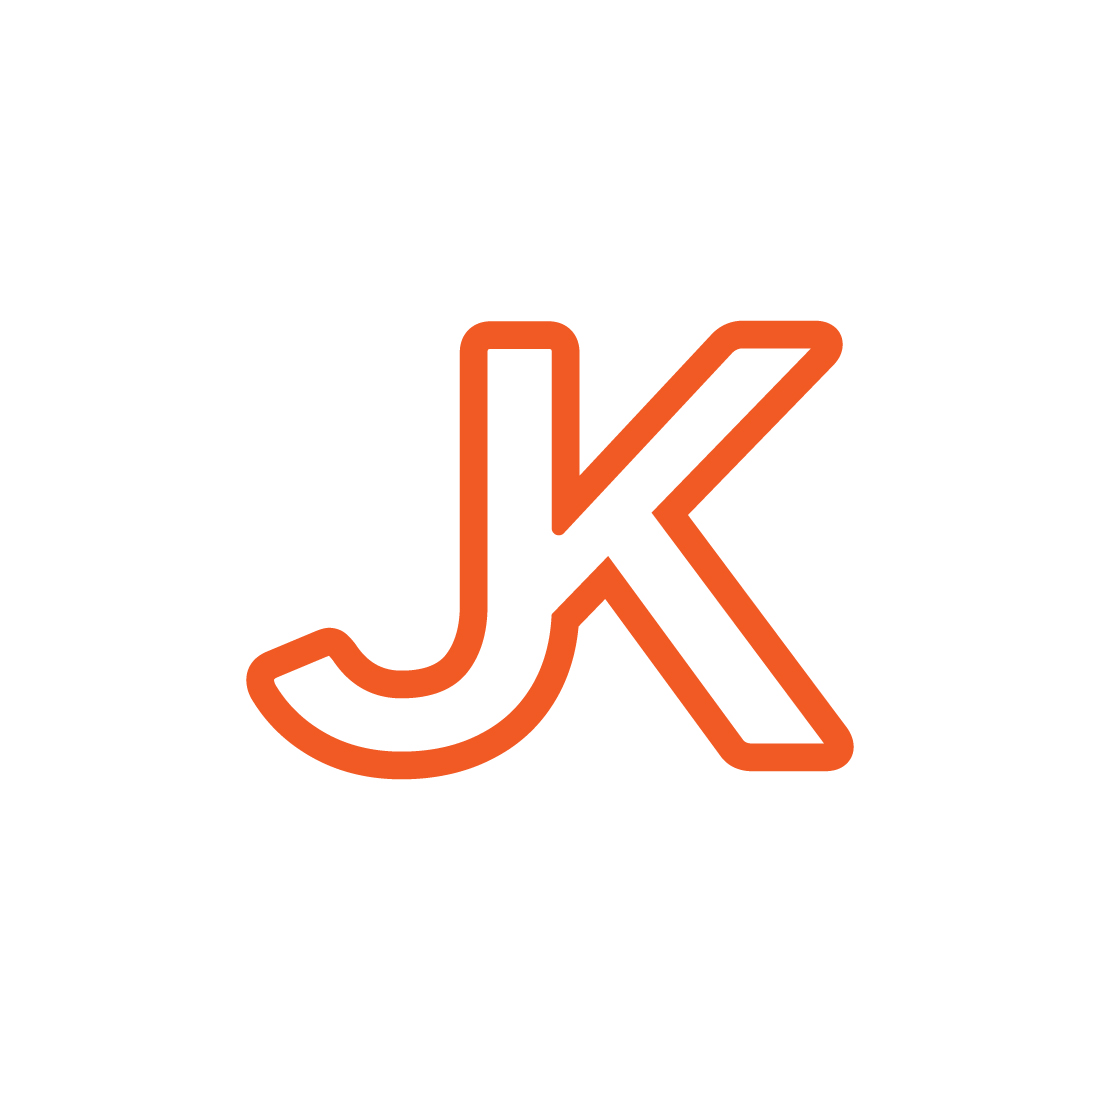 JK logo design preview image.